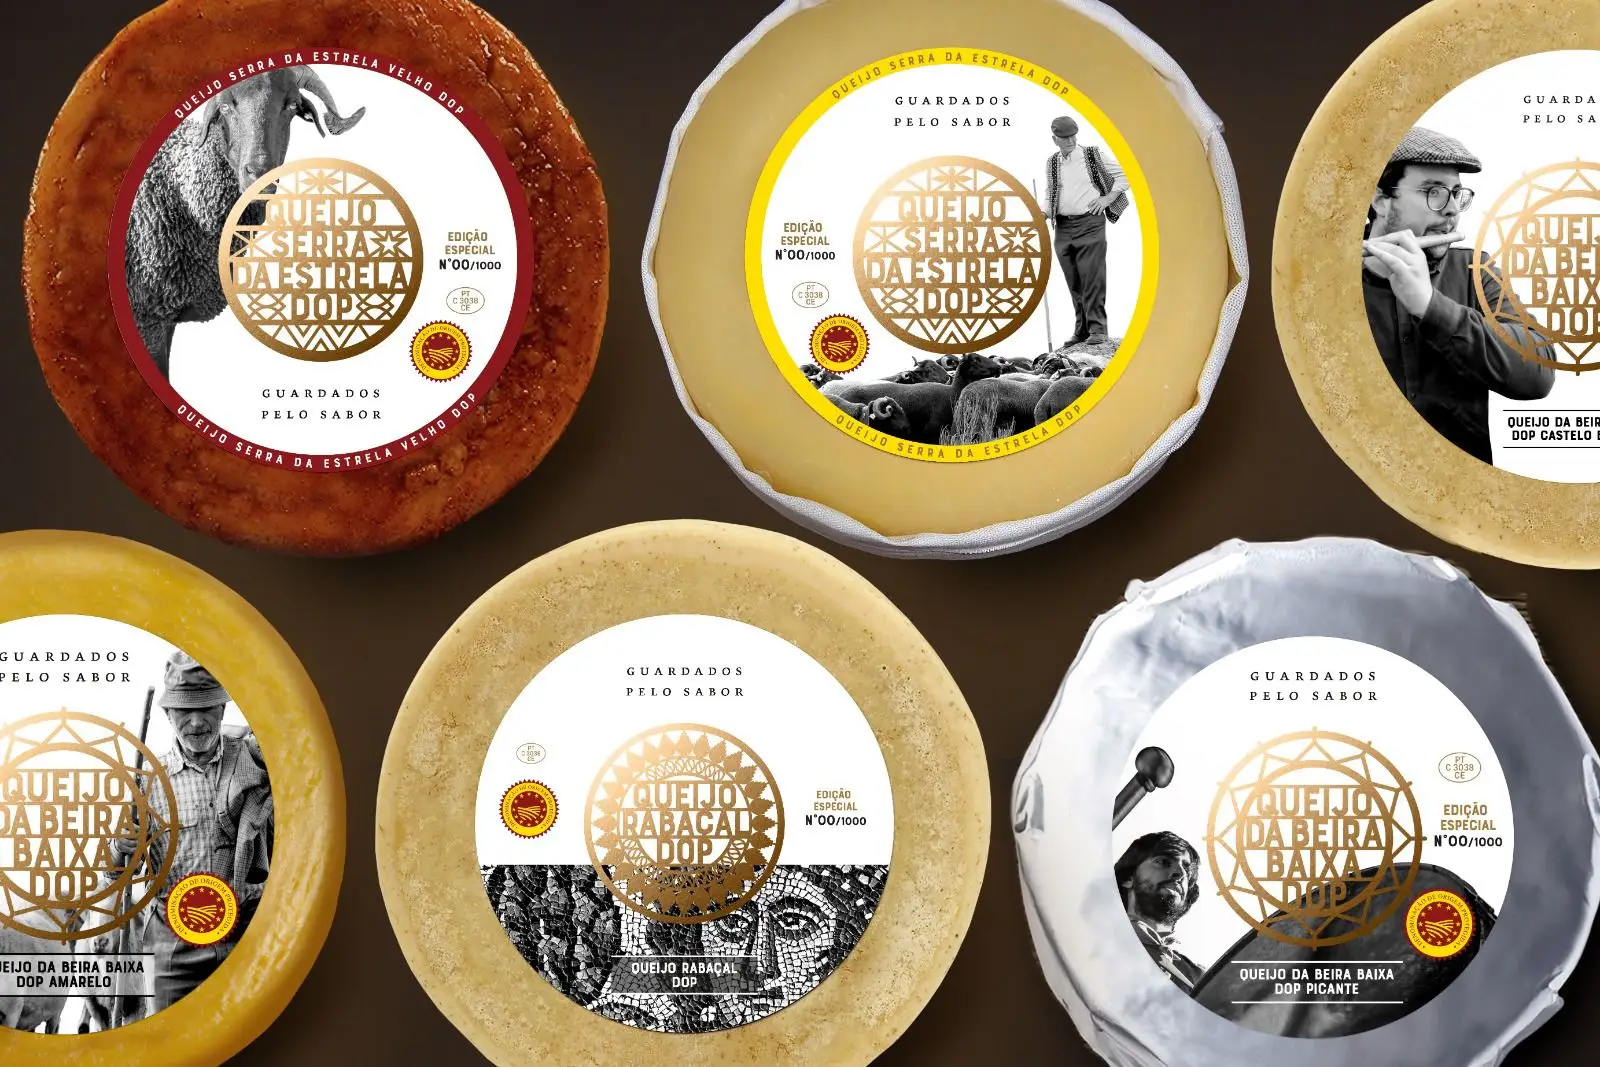 Guardados pelo sabor: Três queijos únicos para provar no Centro de Portugal